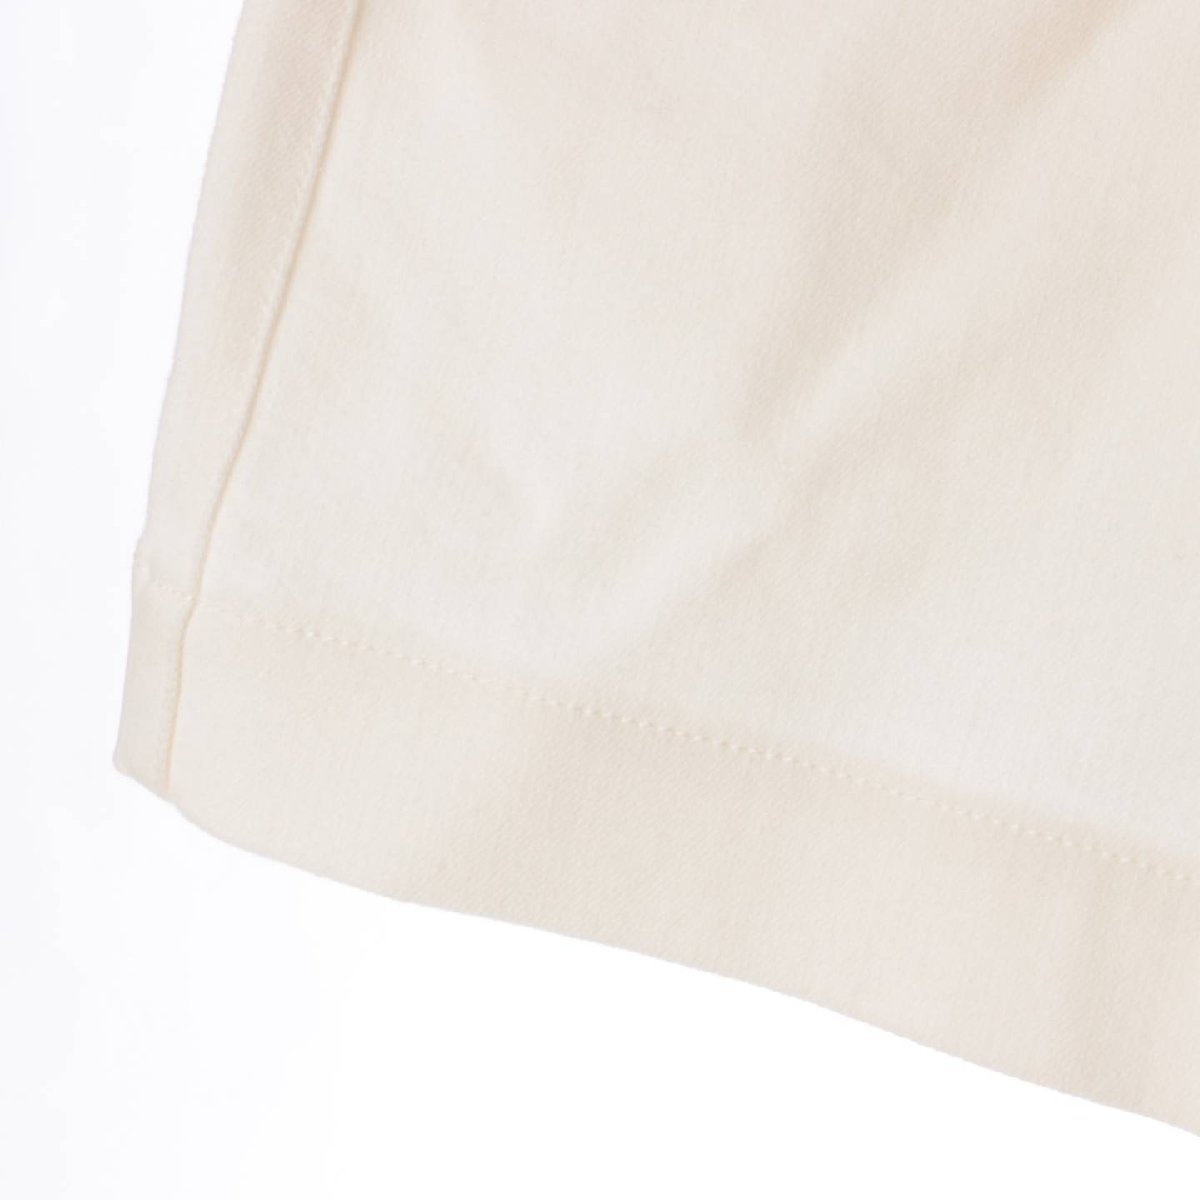 [ Fendi ]Fendi 21 год хлопок Denim Logo Short шорты FLP766 белый 40 [ б/у ][ стандартный товар гарантия ]201269